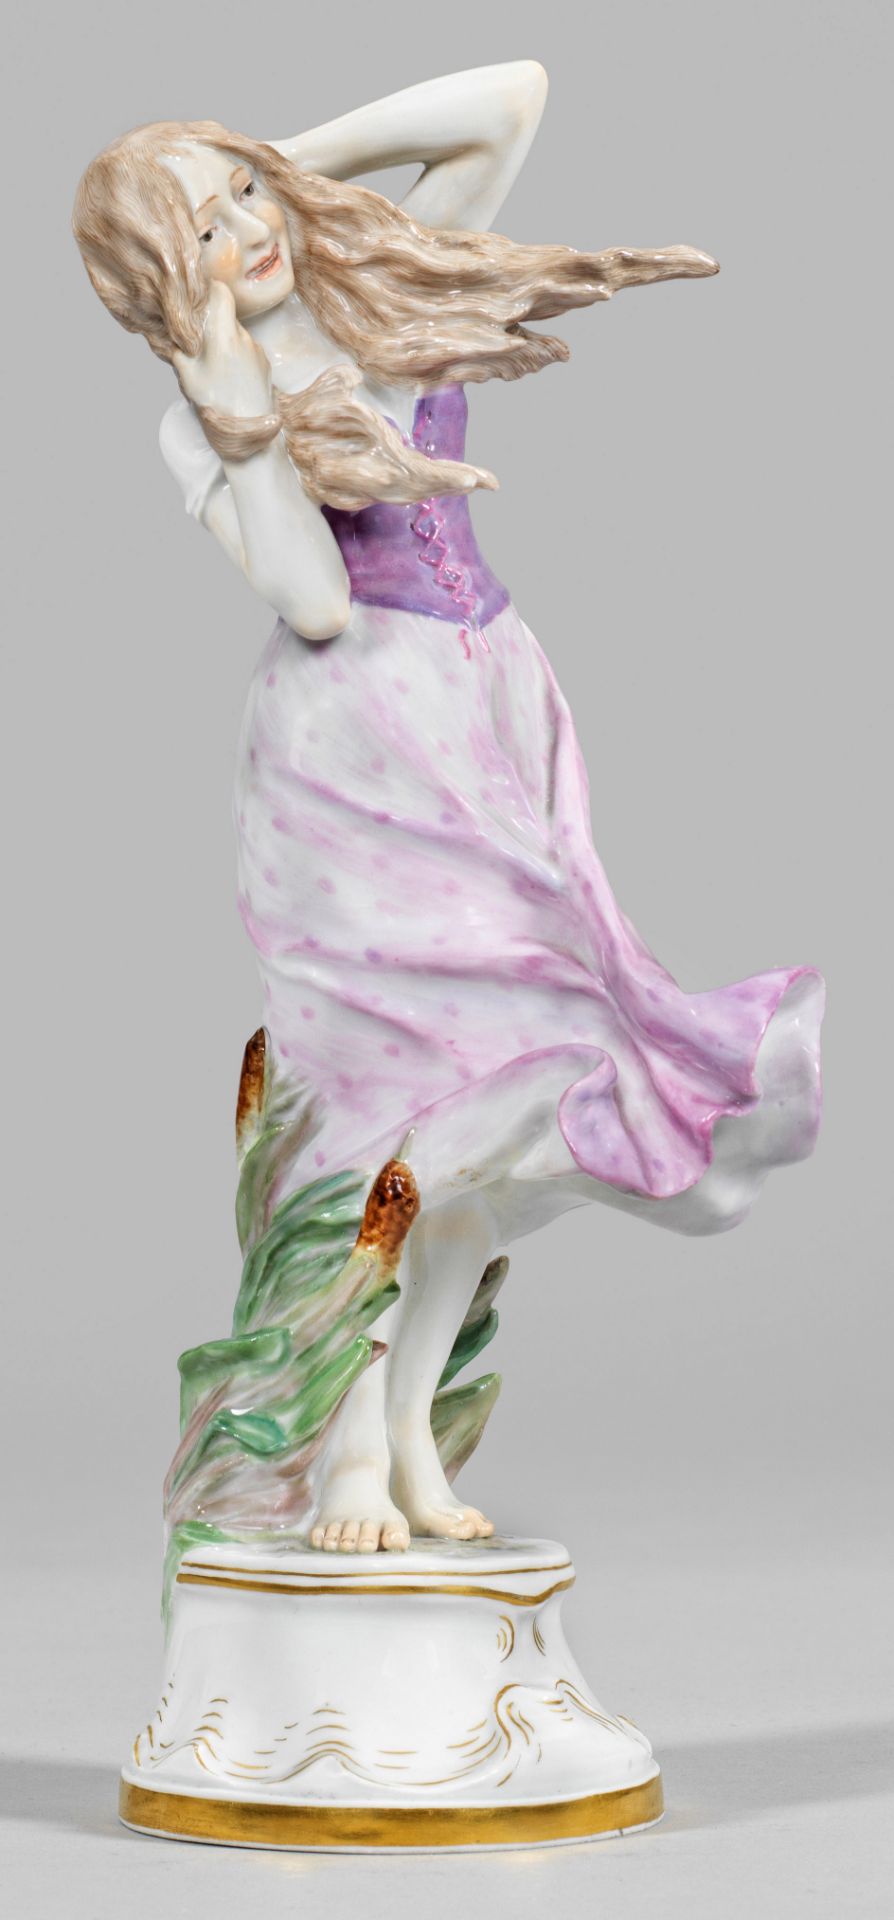 Seltene Jugendstil-Figur "Mädchen im Wind"